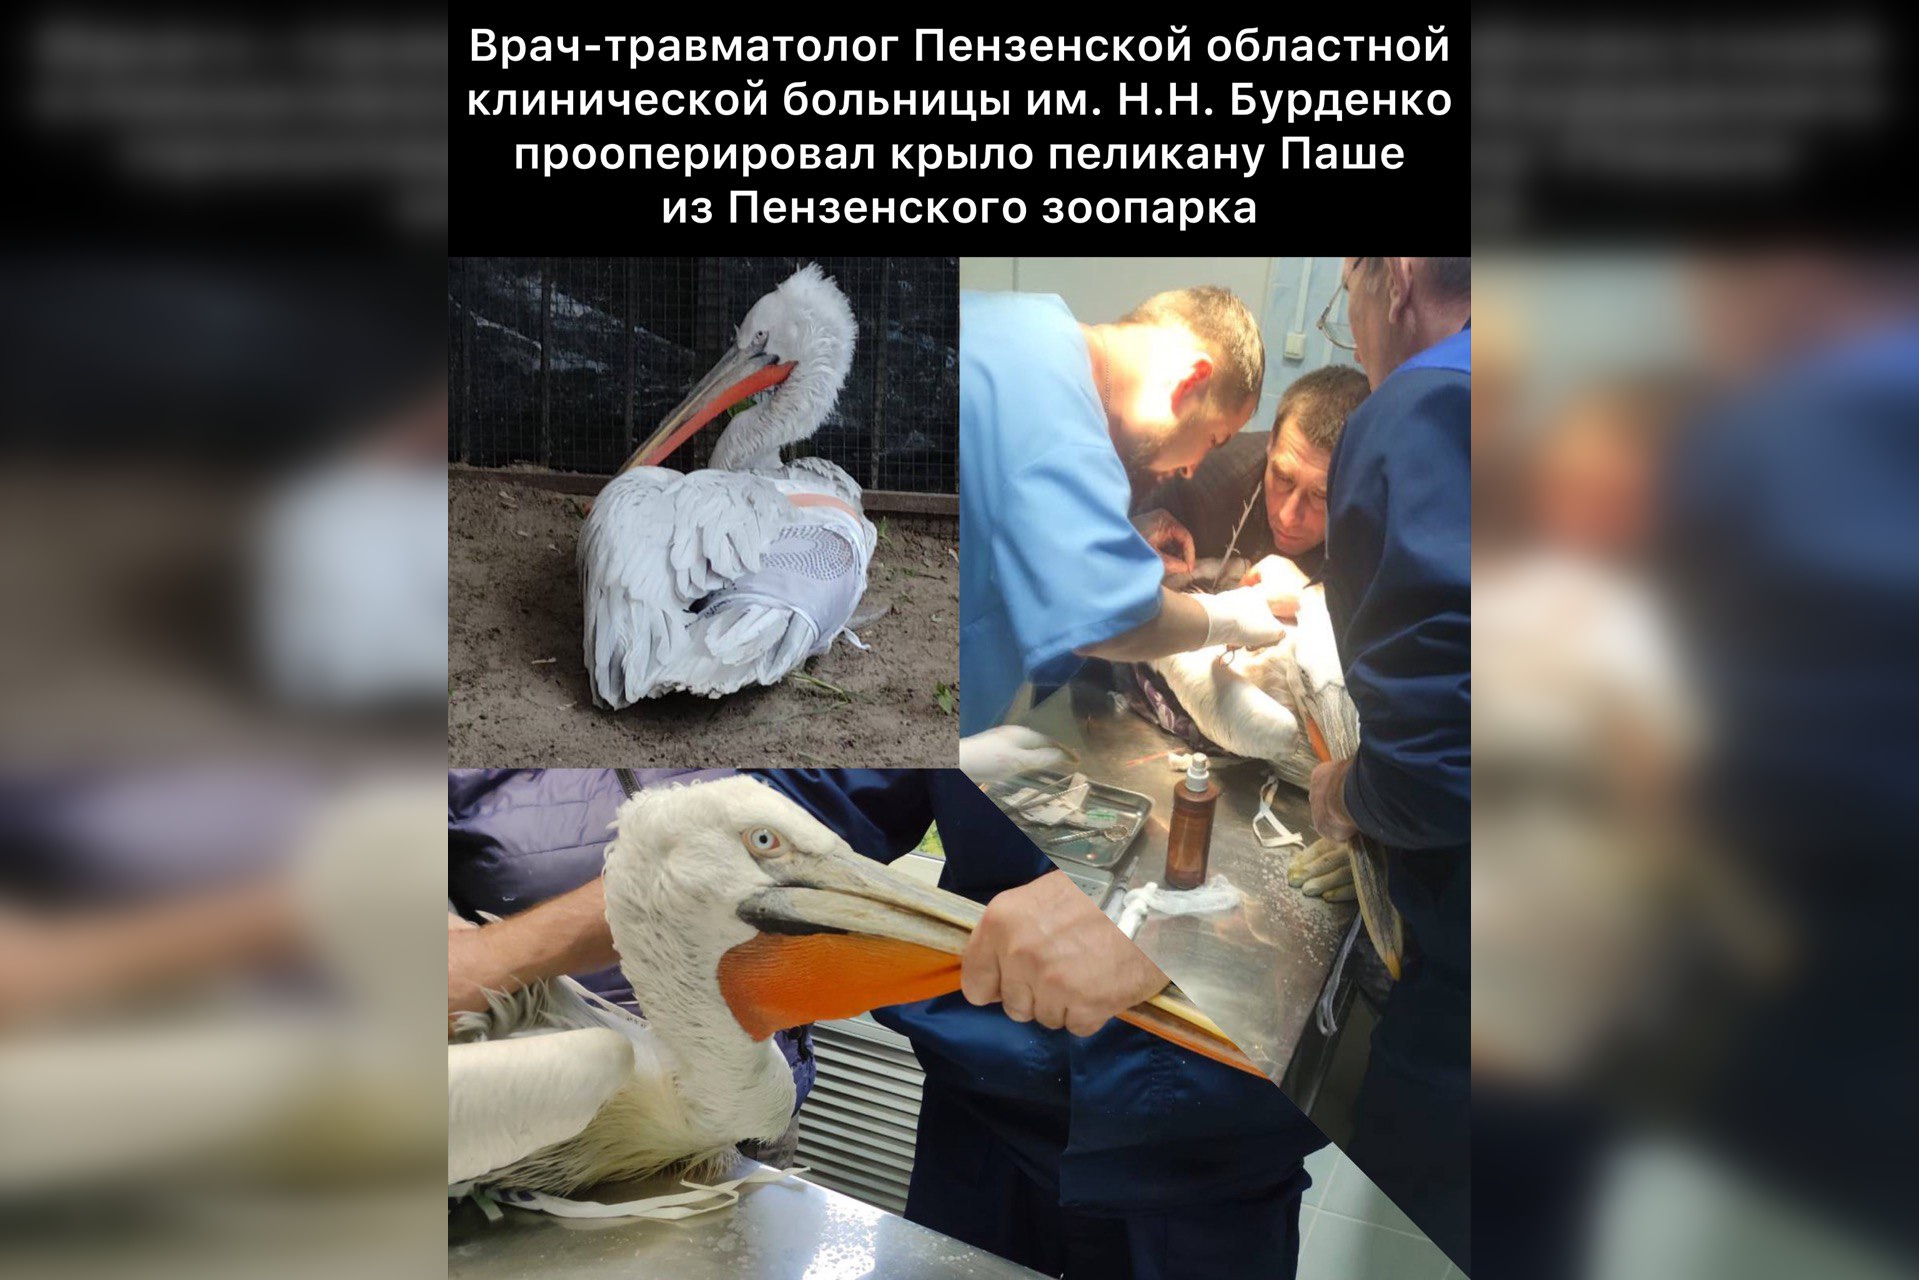 Пензенские травматологи спасли пеликана Пашу с переломанным крылом